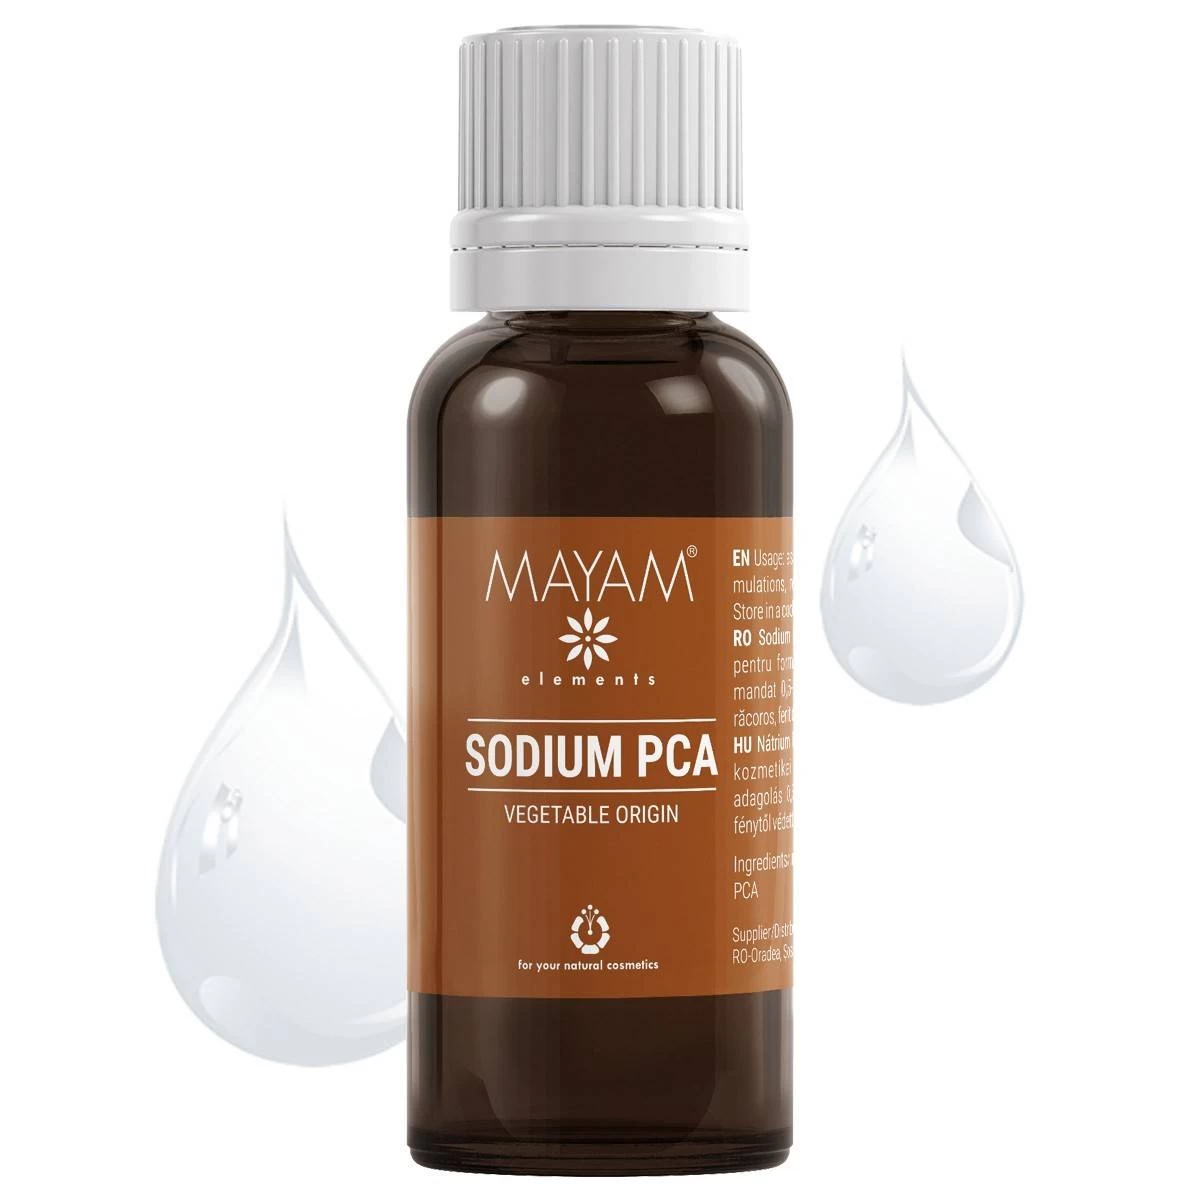 Sodium pca, 25g - mayam